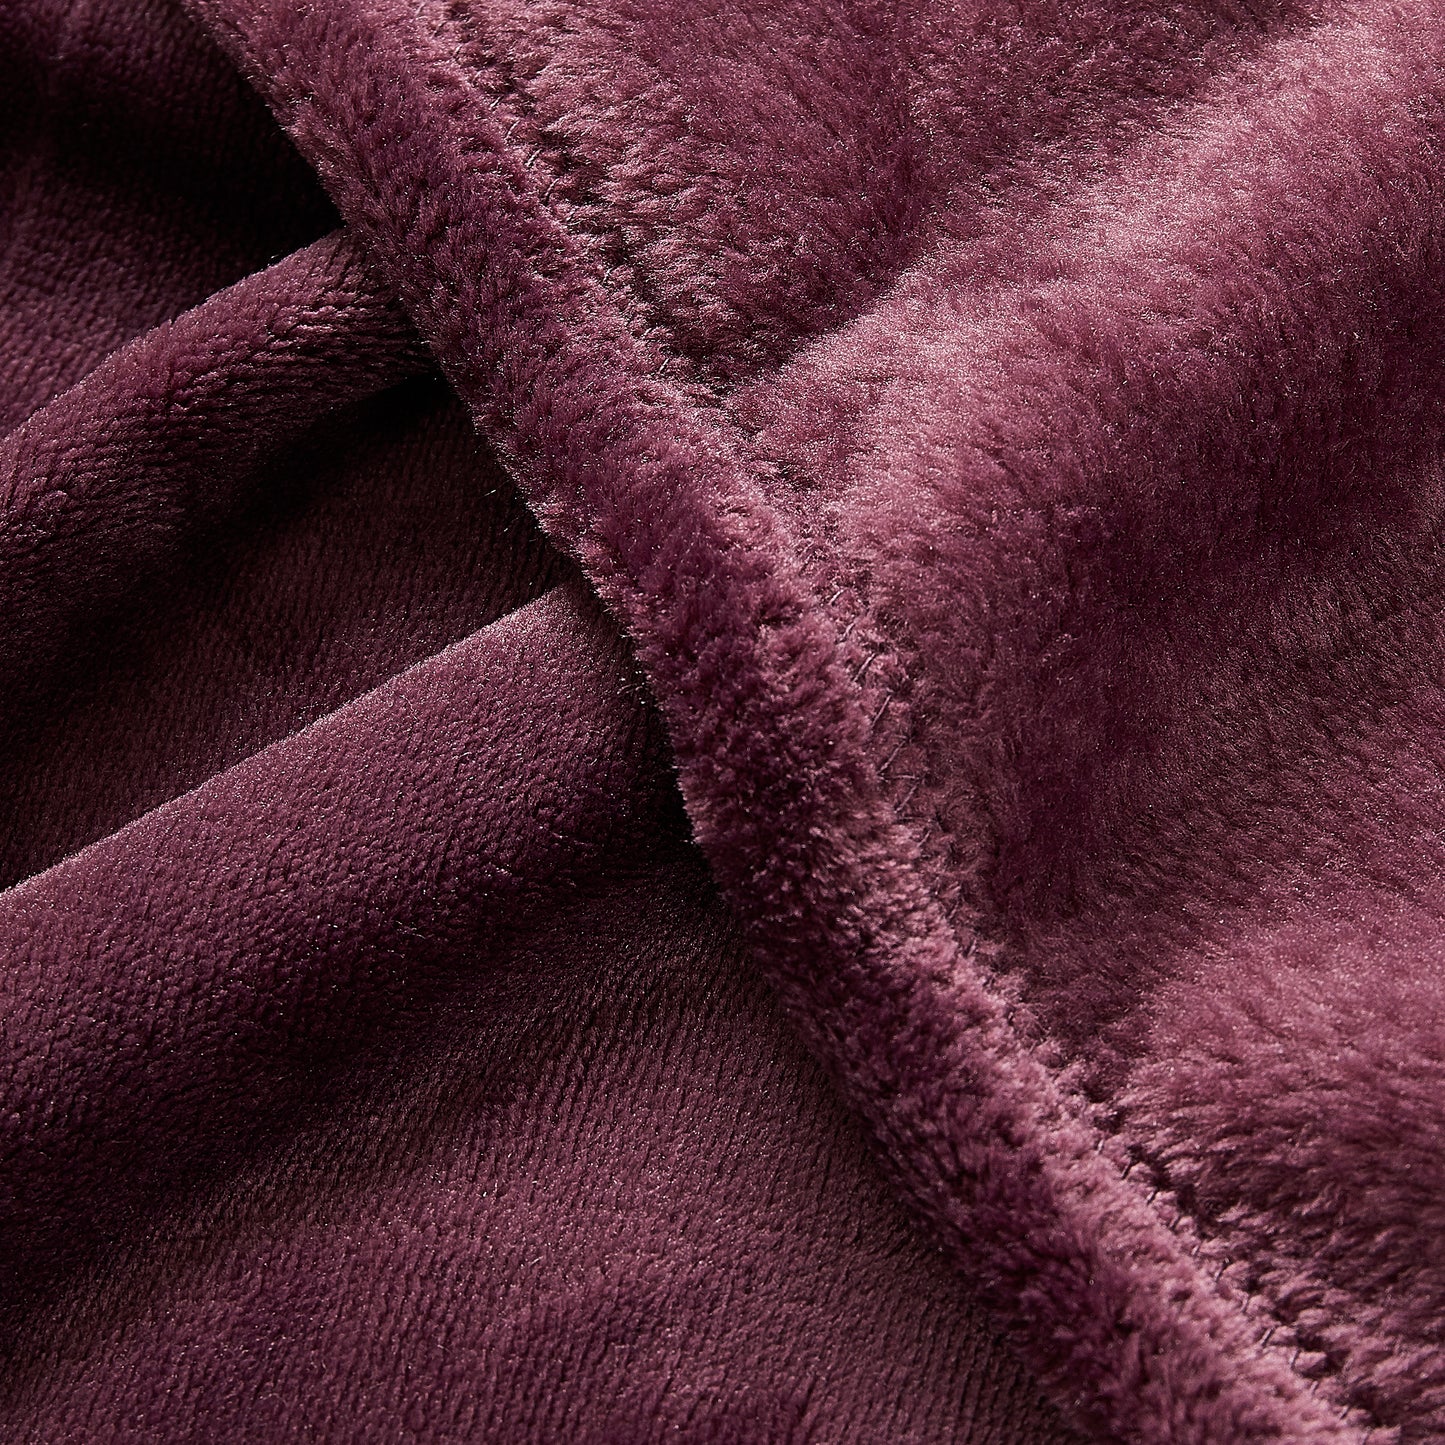 Classic Solid Fleece Blanket - Plum